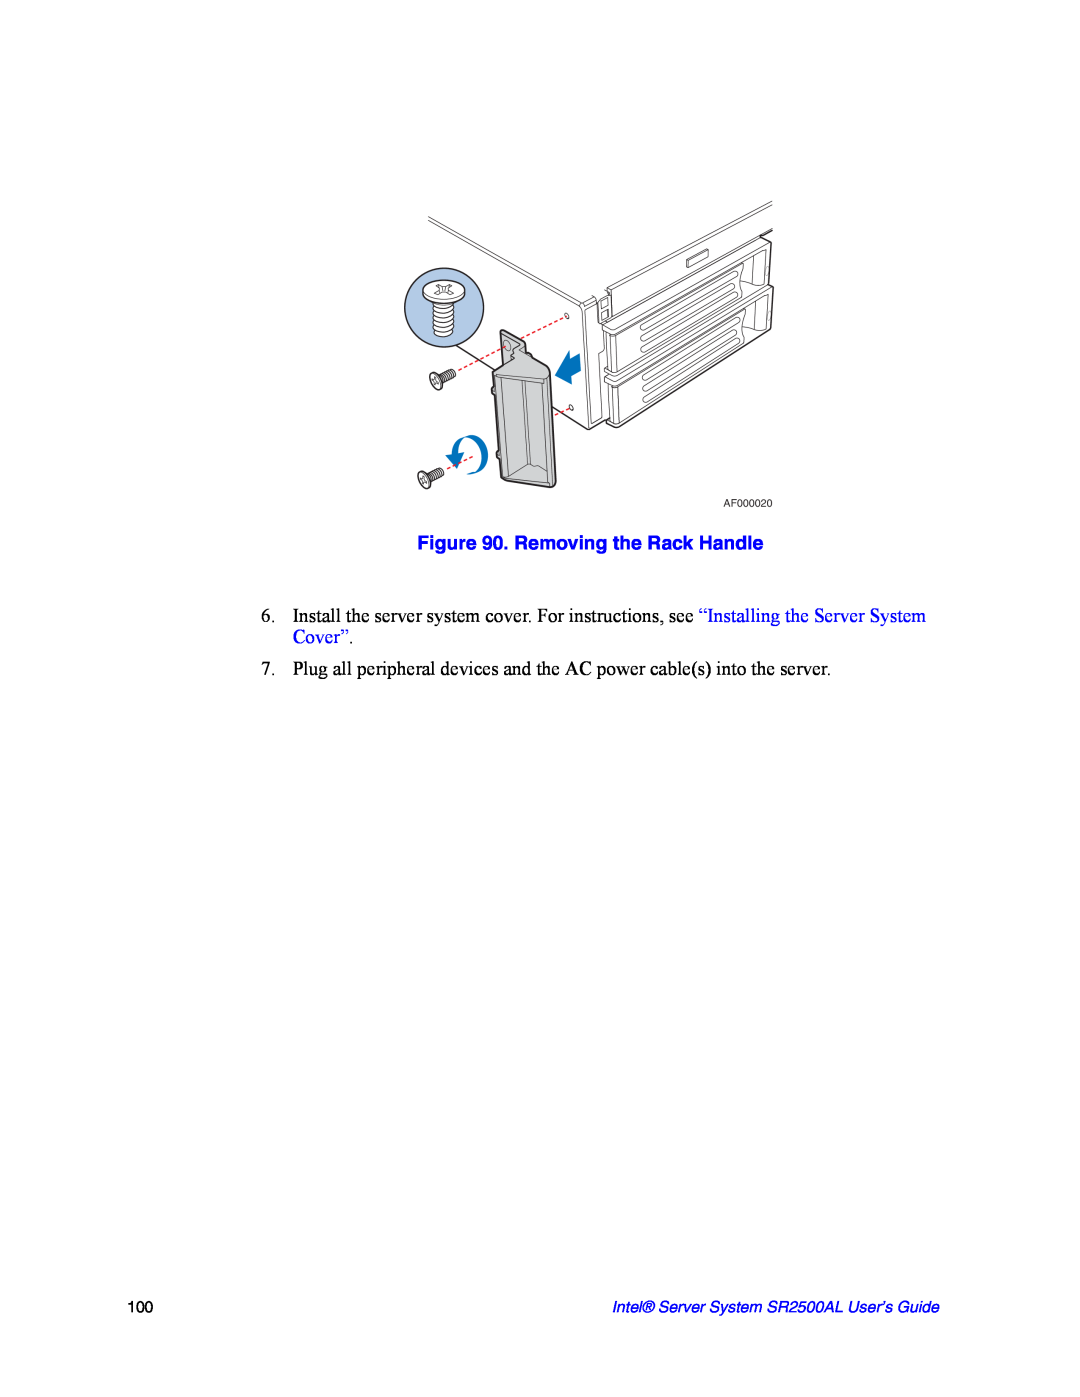 Intel manual Removing the Rack Handle, Intel Server System SR2500AL User’s Guide, AF000020 